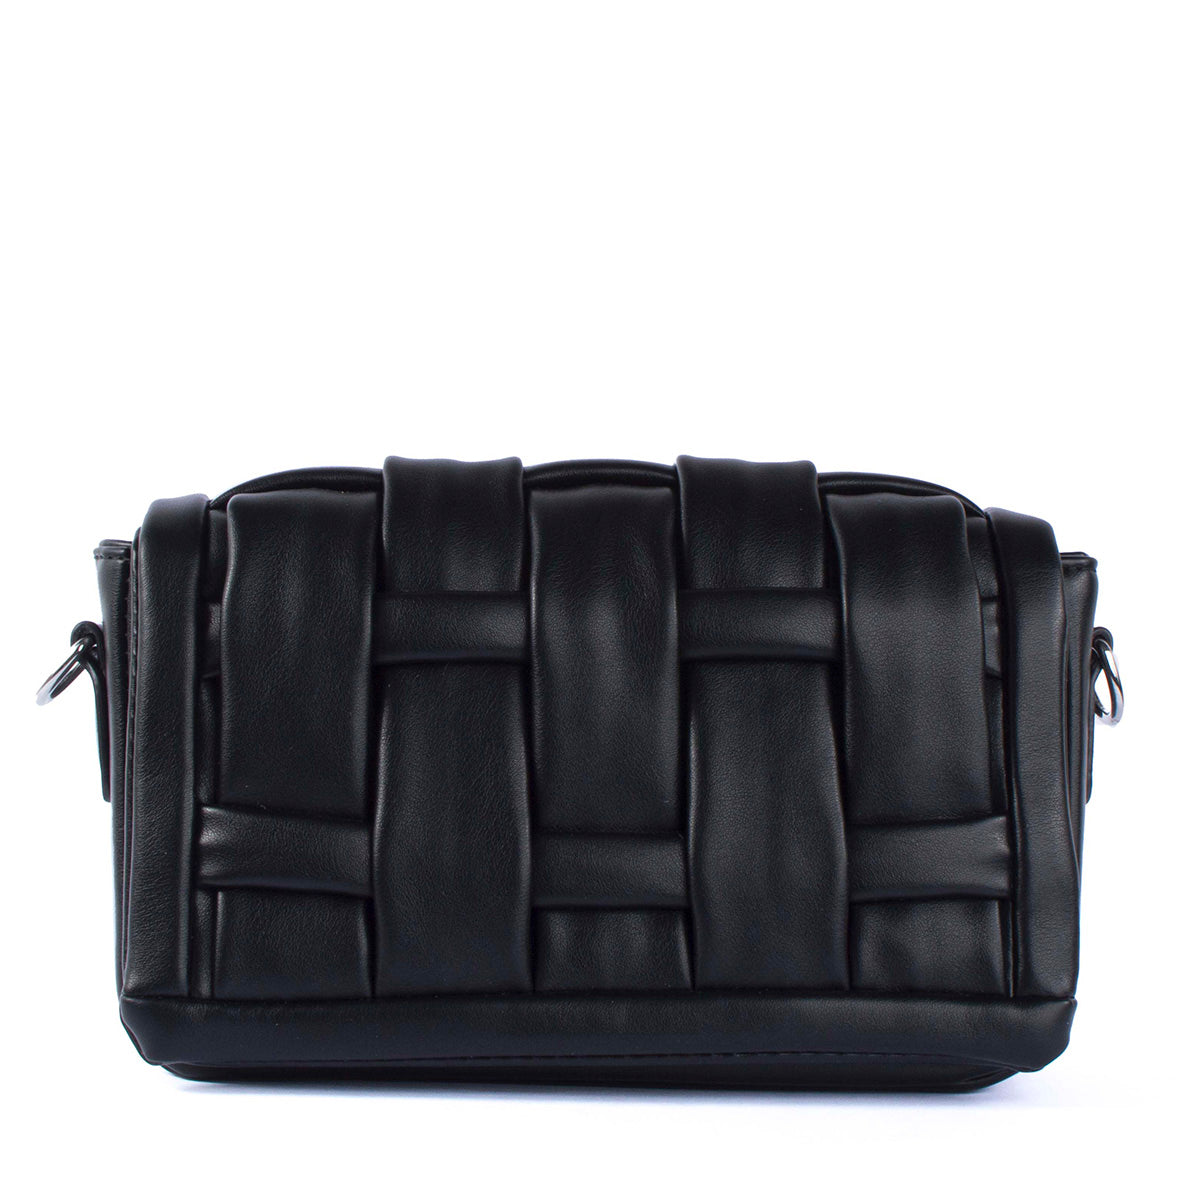 Bolso tipo bandolera color negro diseño acolchado y moderno